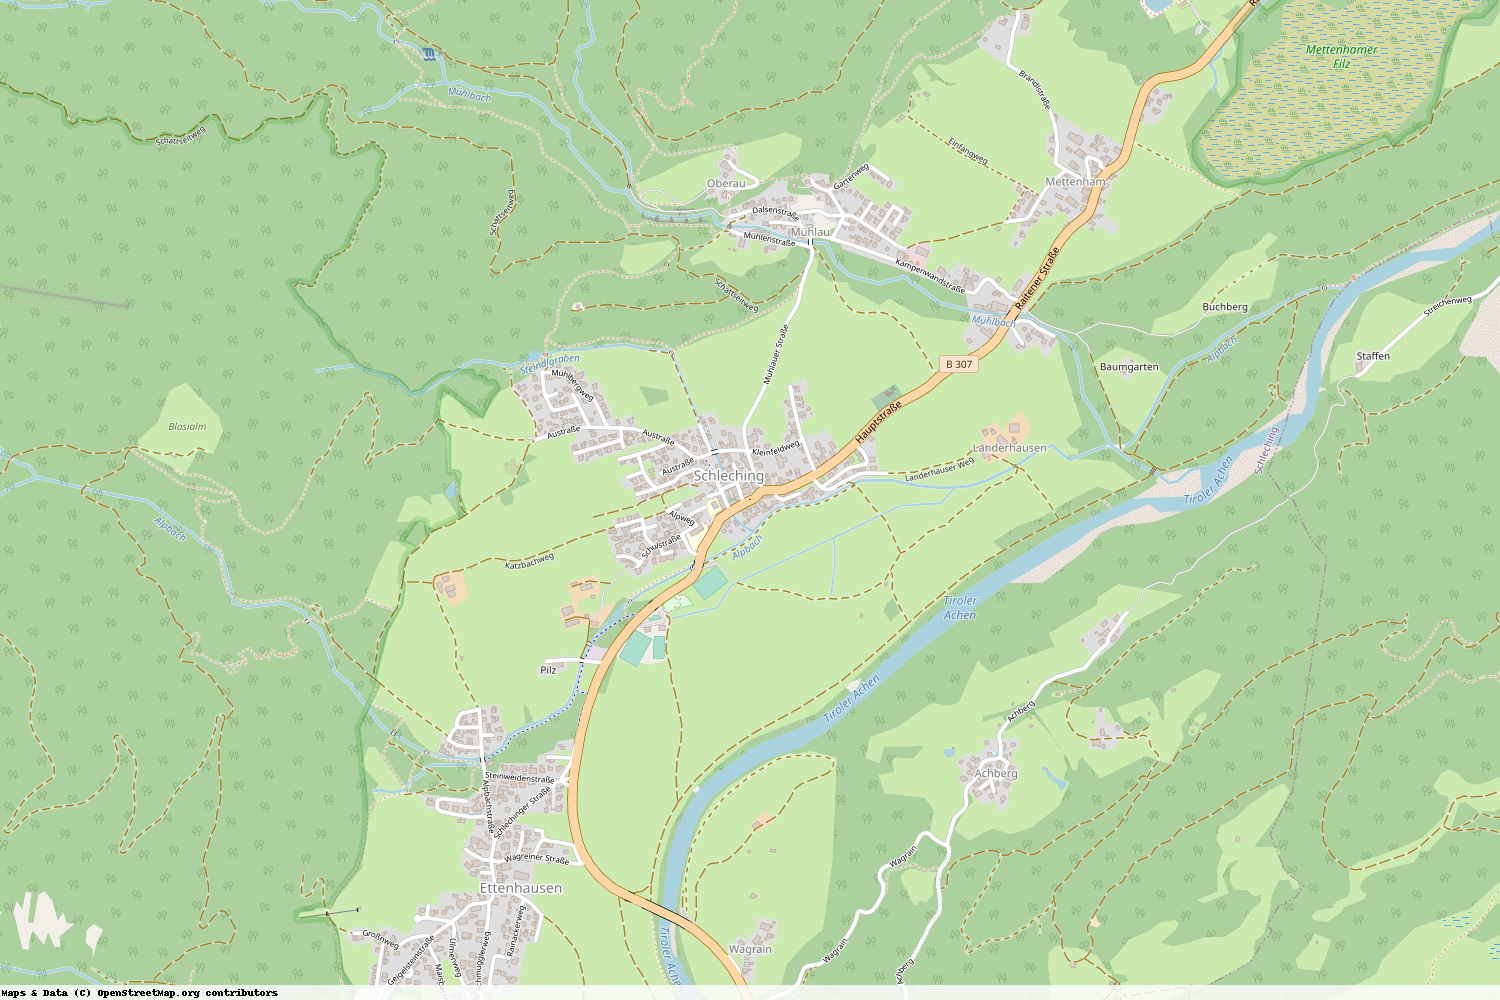 Ist gerade Stromausfall in Bayern - Traunstein - Schleching?